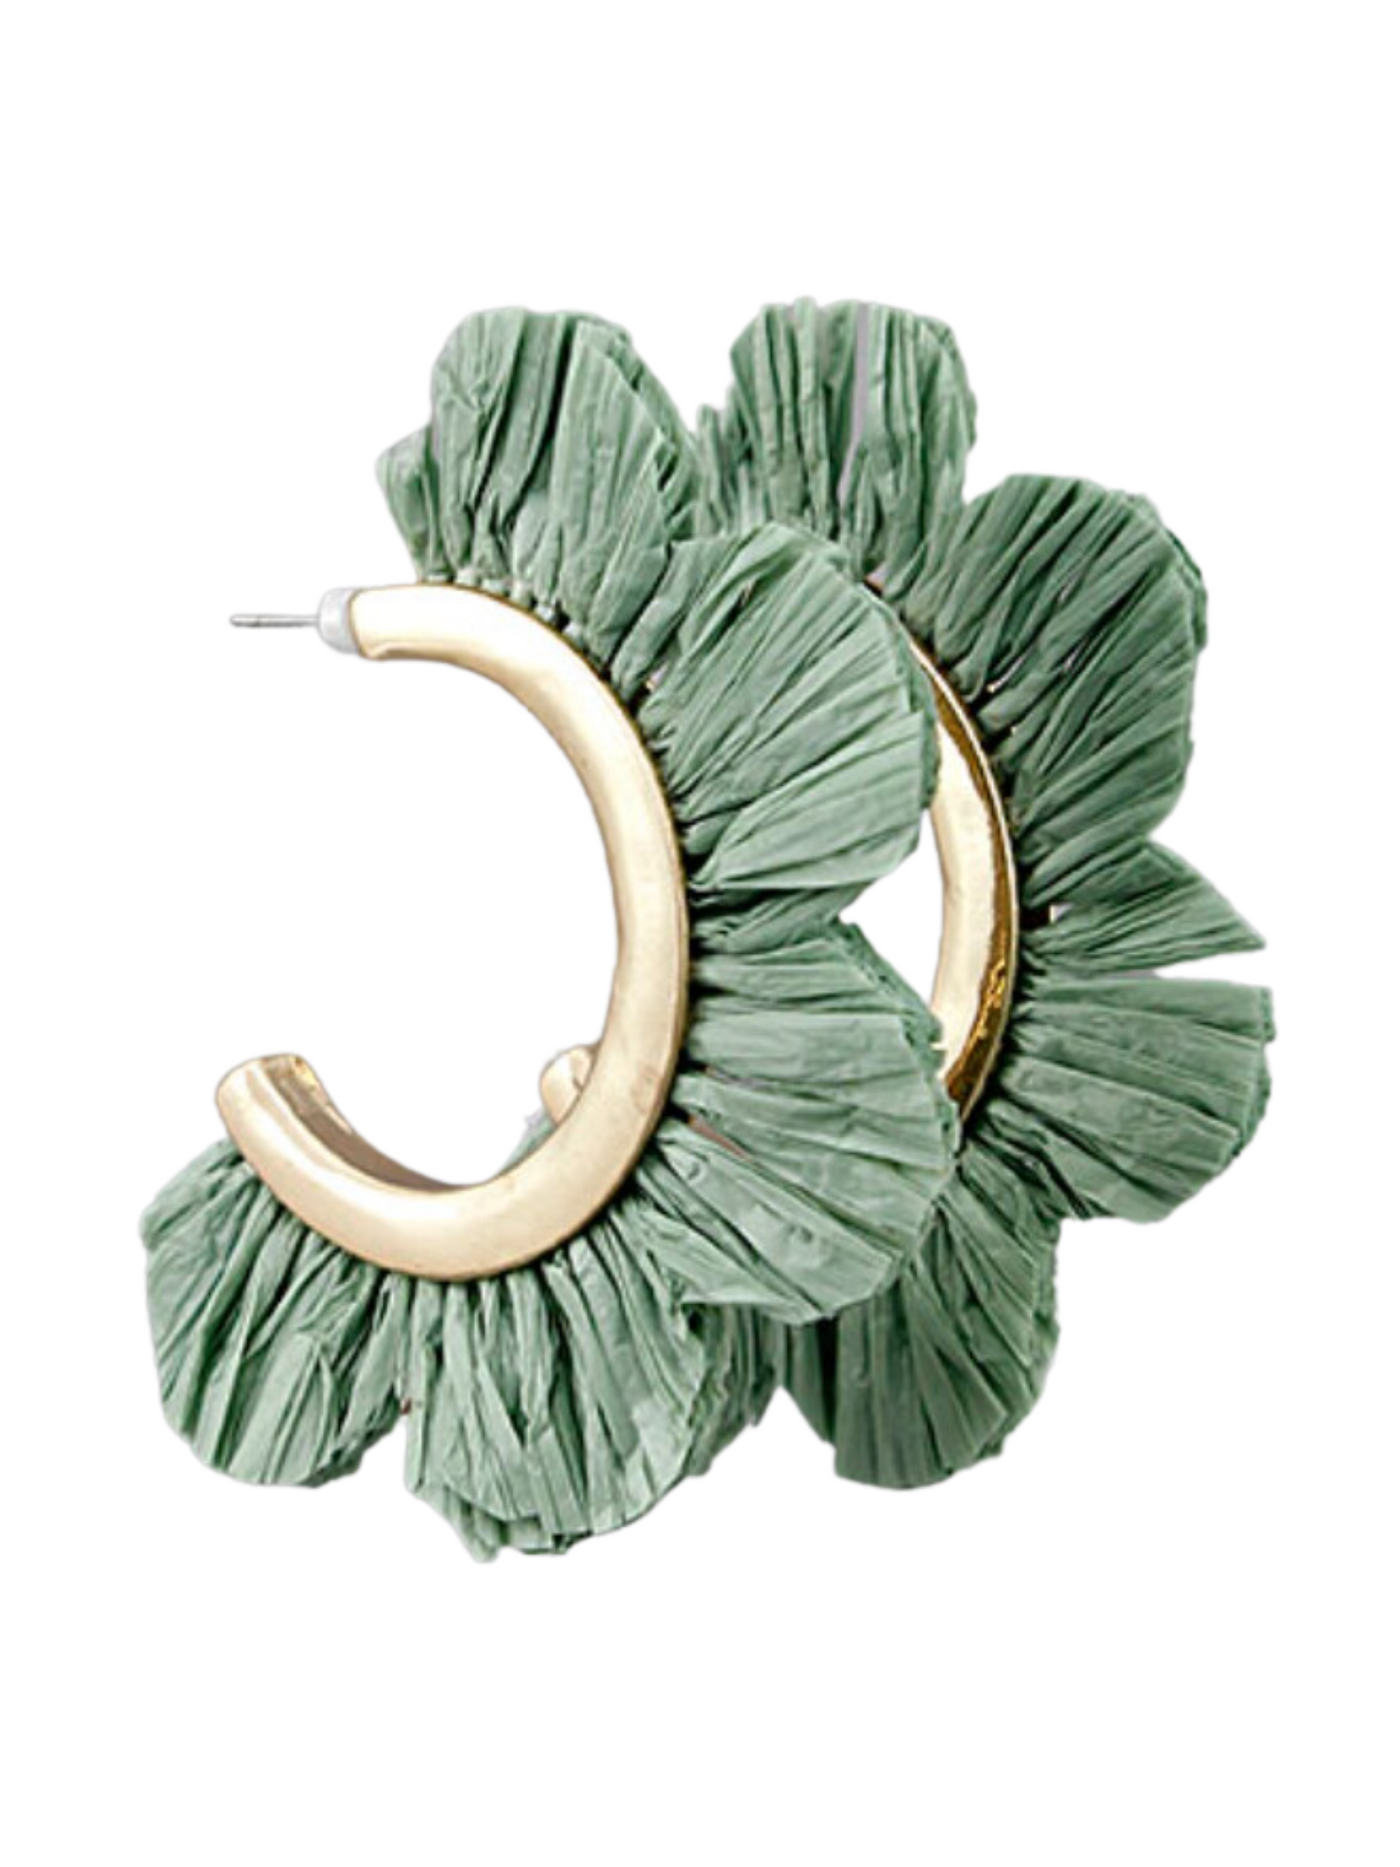 Raffia Flower Hoop Earrings